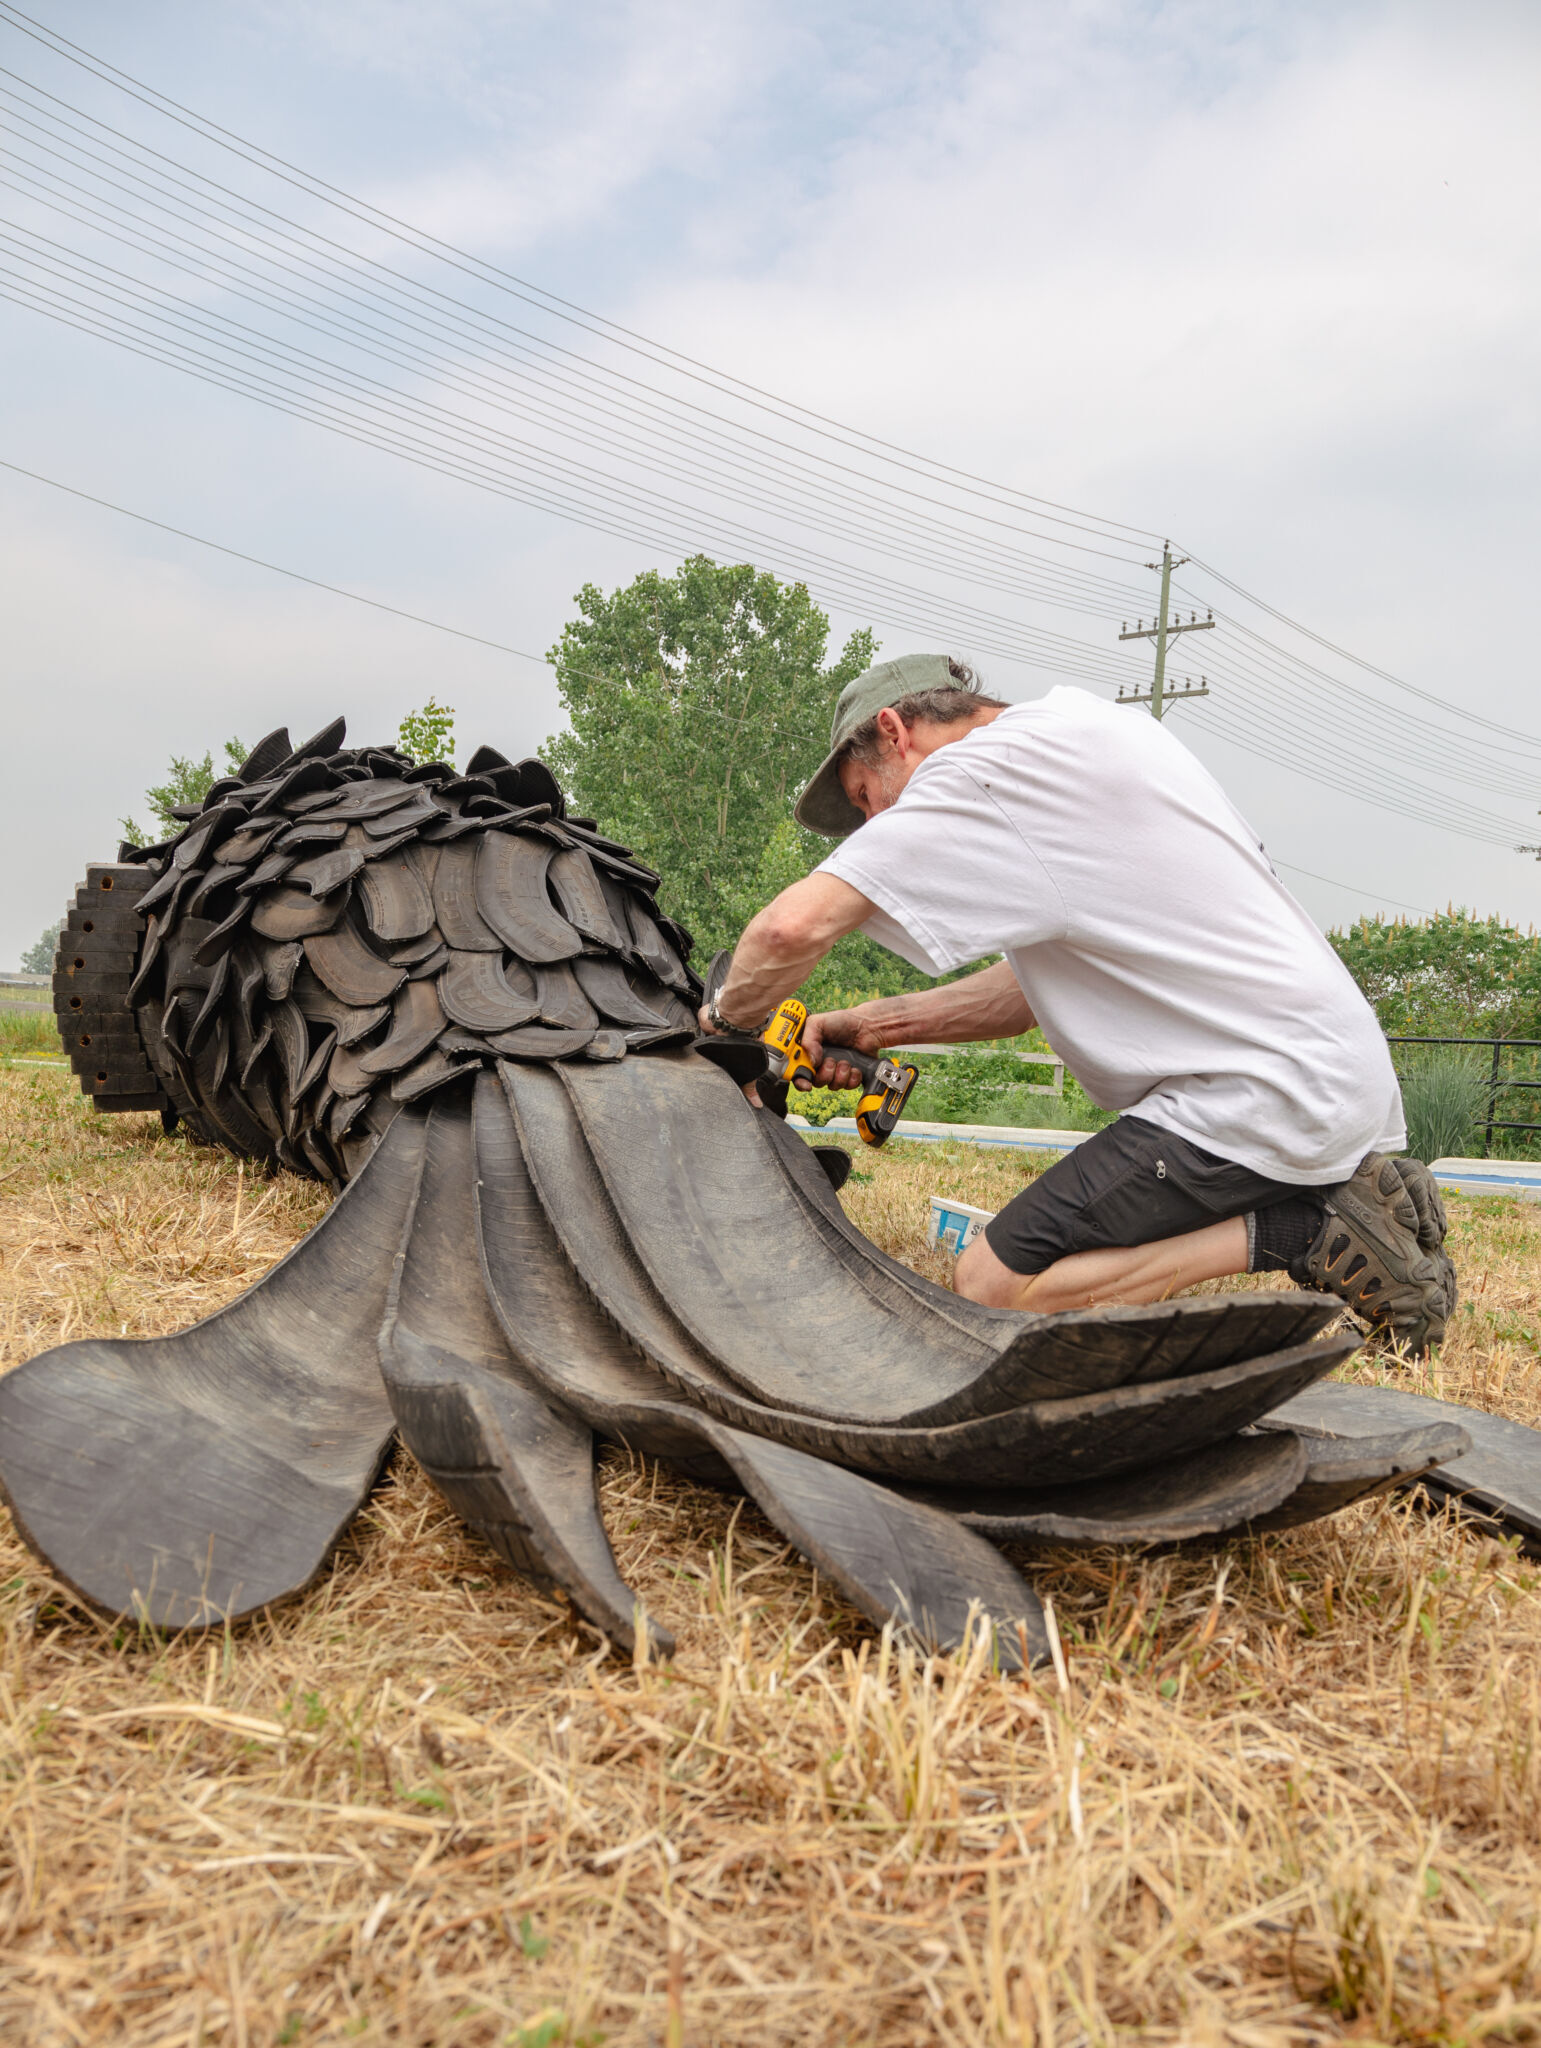 Artiste à genoux qui installe des pièces sur sa sculpture, un corbeau en pneus recyclés de 16 pieds. Vue de dos du corbeau étendu au sol.